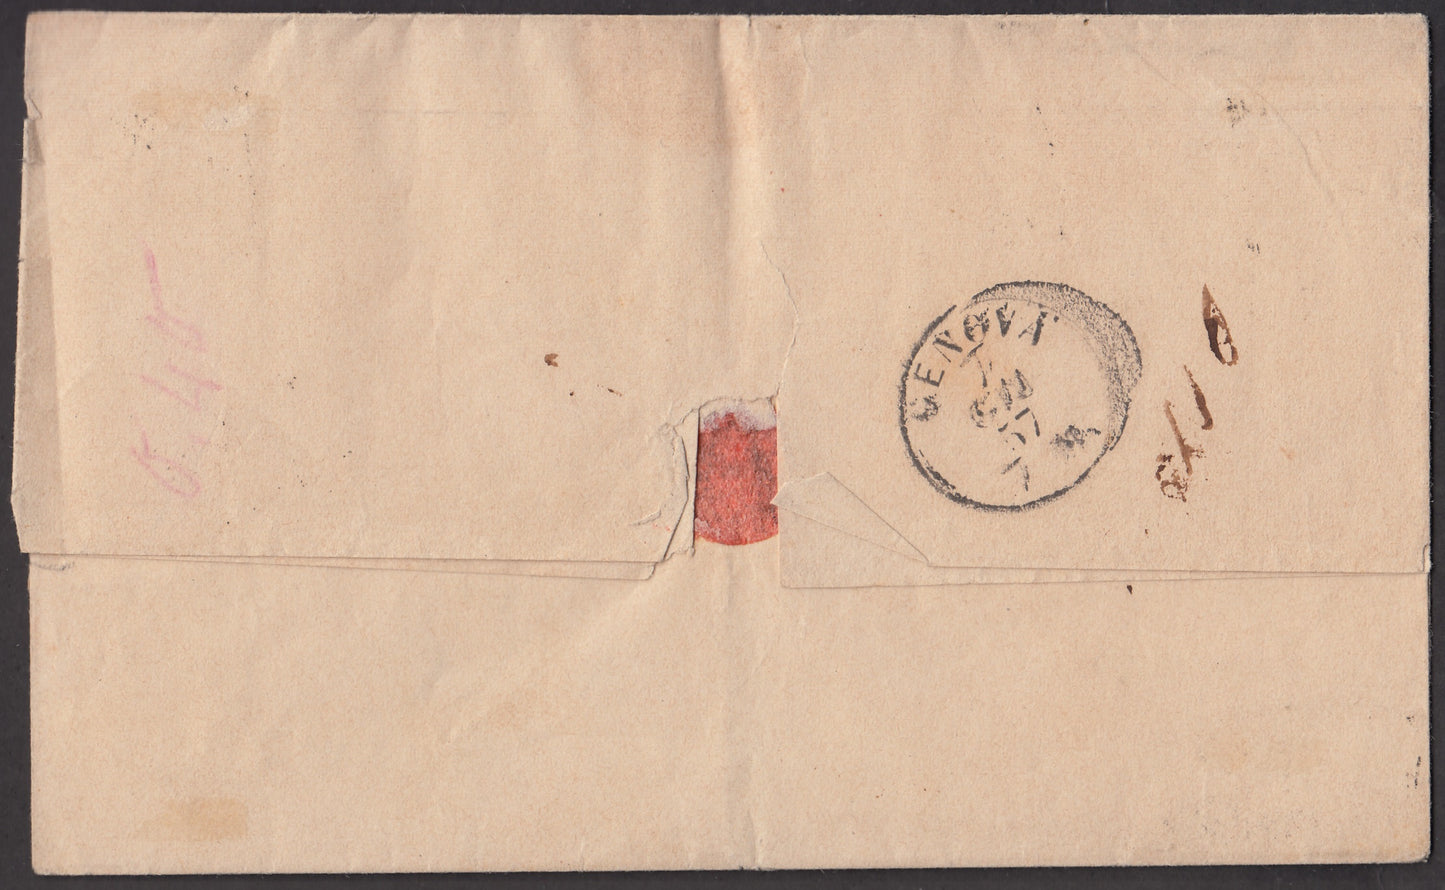 BA23-159 1857 - Lettera spedita da Bologna per Genova 5/6/57 affrancata con 2 baj verde giallastro due esemplari + 8 baj bianco (3a + 9)